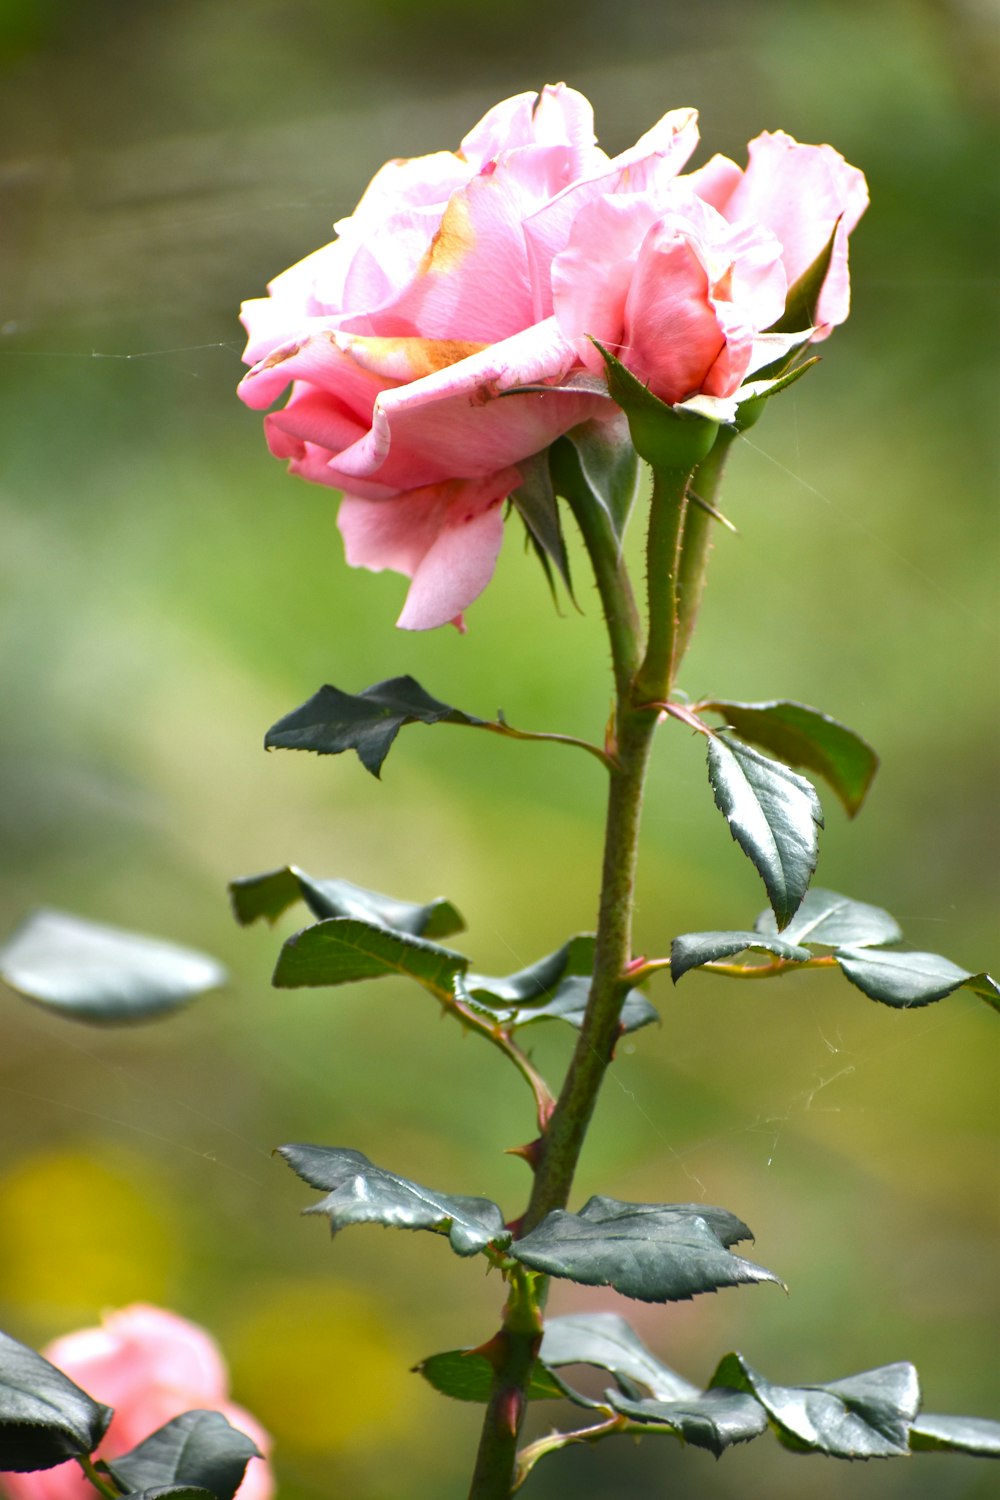 una rosa rosa con hojas verdes en primer plano